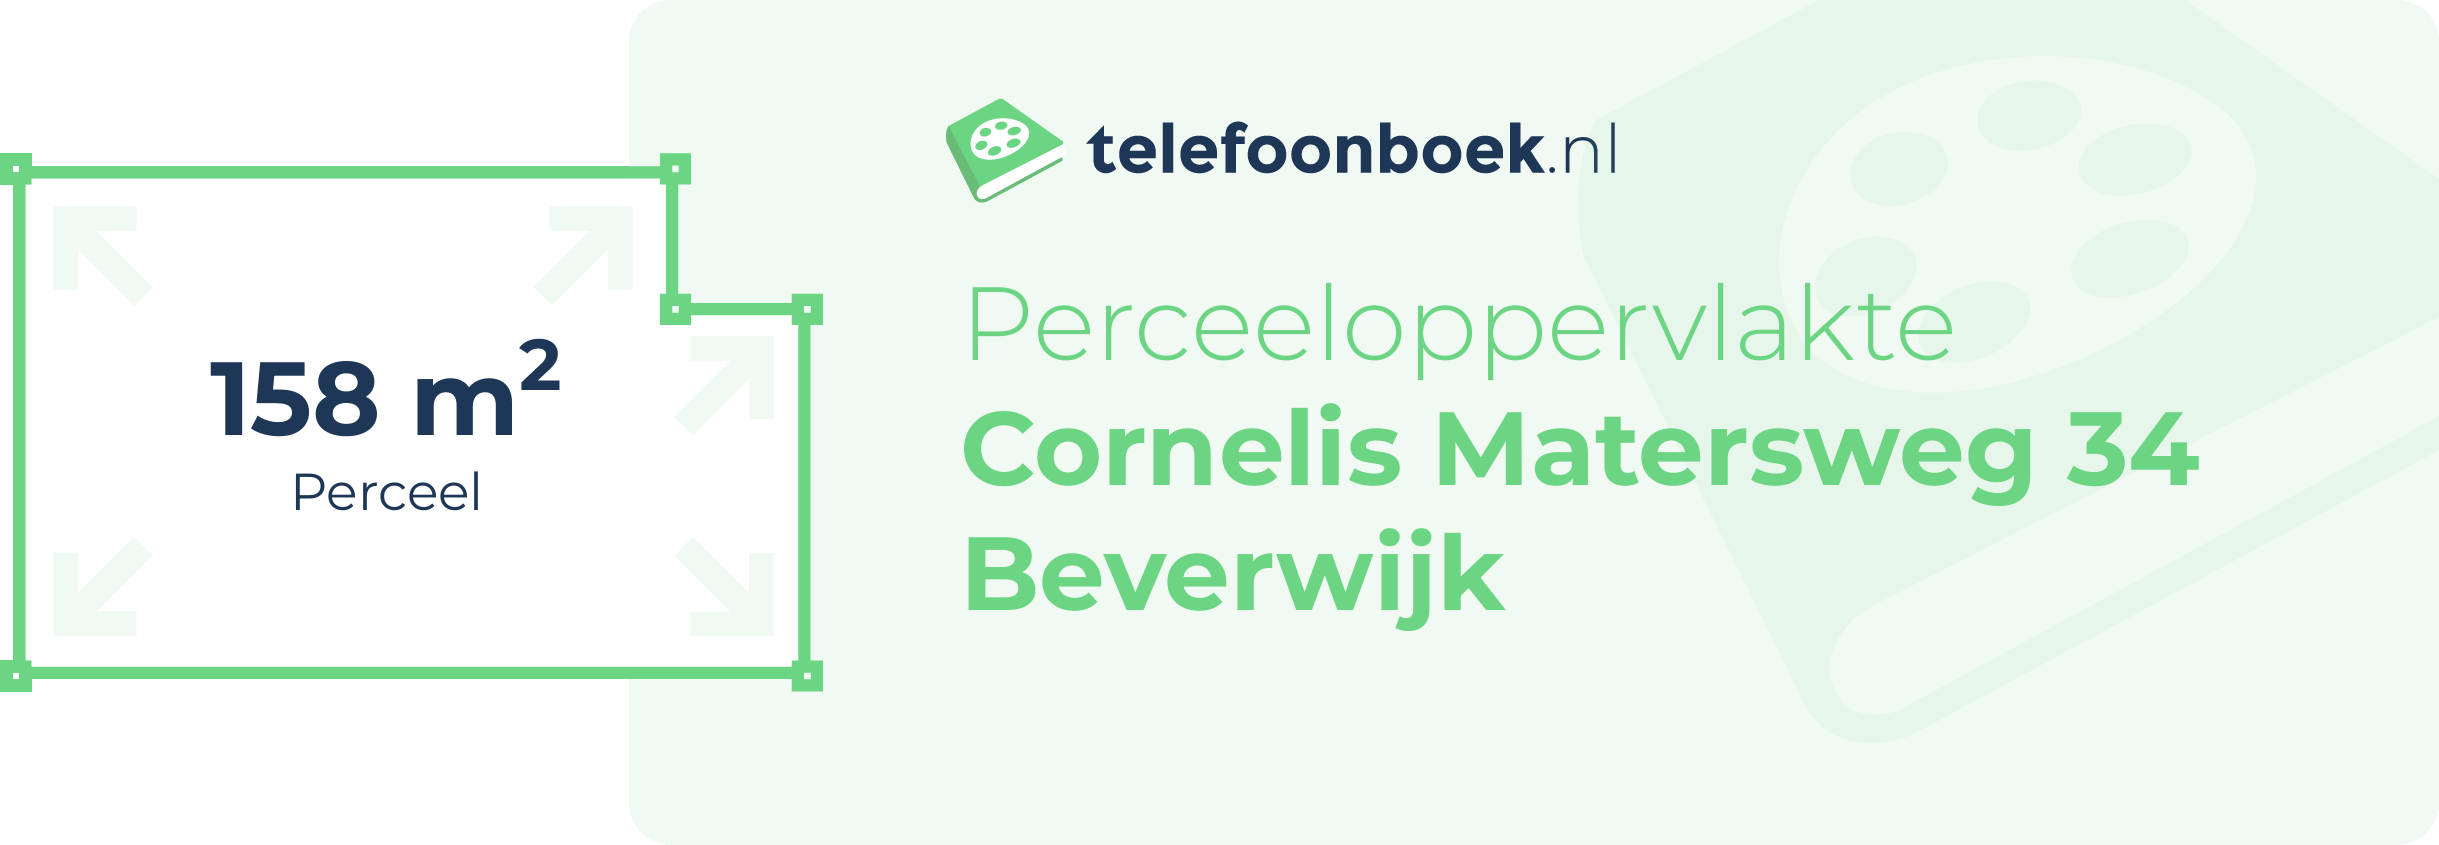 Perceeloppervlakte Cornelis Matersweg 34 Beverwijk